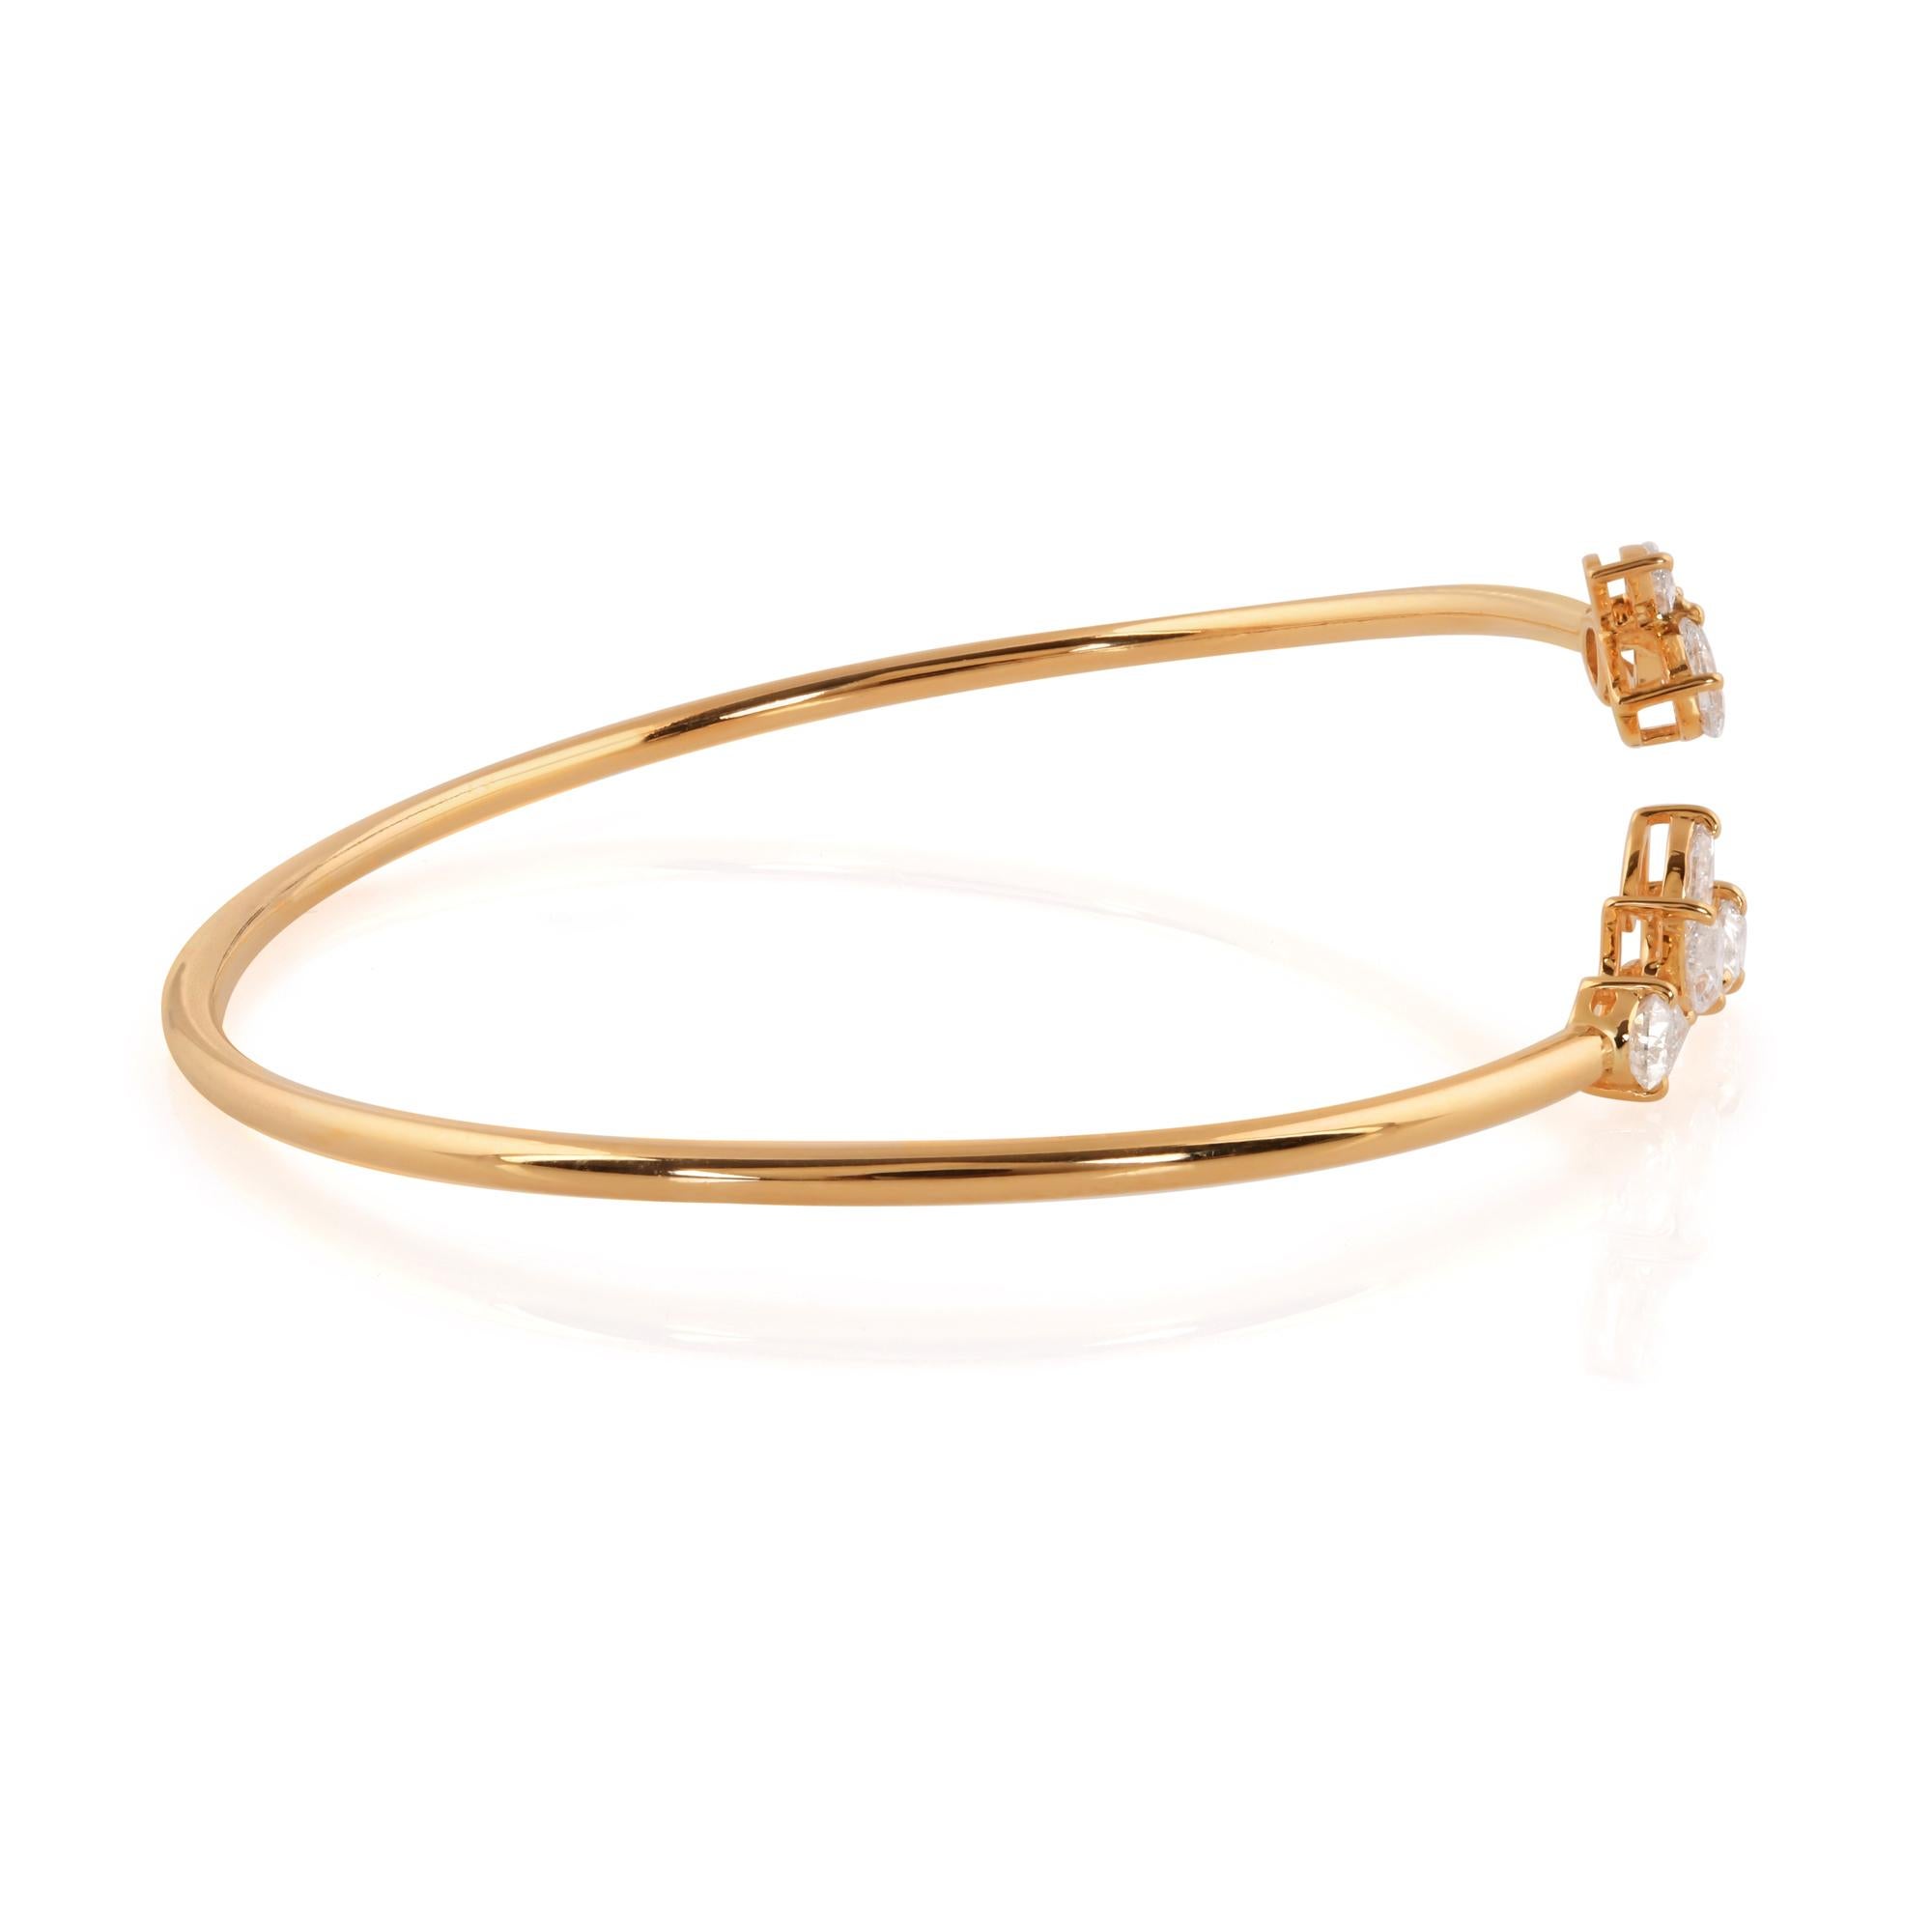 Gönnen Sie sich den exquisiten Reiz des Luxus mit unserem Marquise & Pear Diamond Cuff Bangle Bracelet, gefertigt aus strahlendem 14 Karat Gelbgold. Dieses opulente Schmuckstück strahlt Raffinesse und Eleganz aus und eignet sich perfekt für